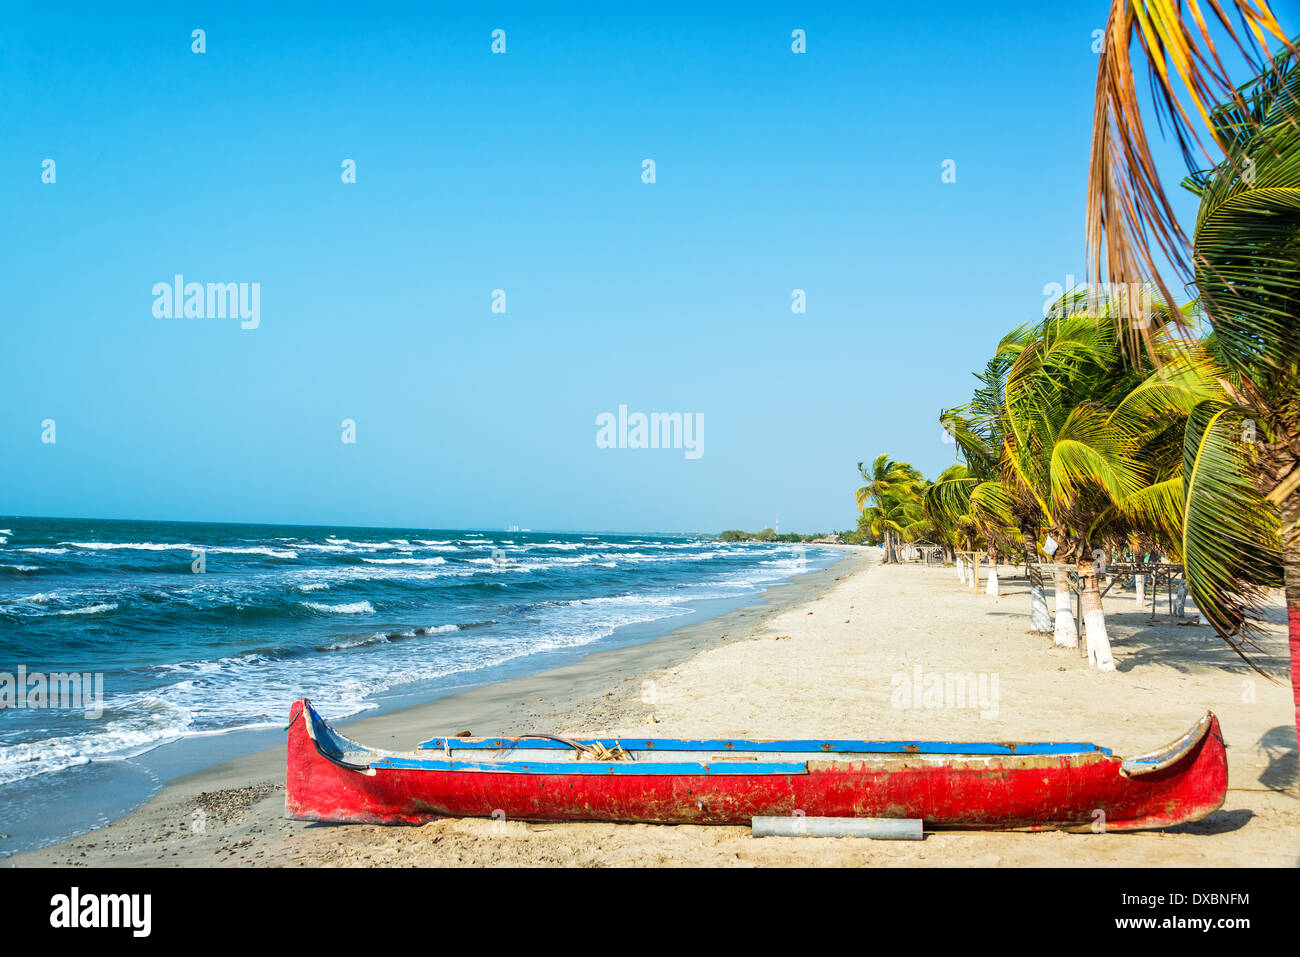 La sabbia bianca della spiaggia caraibica con una canoa rossa in primo piano Foto Stock